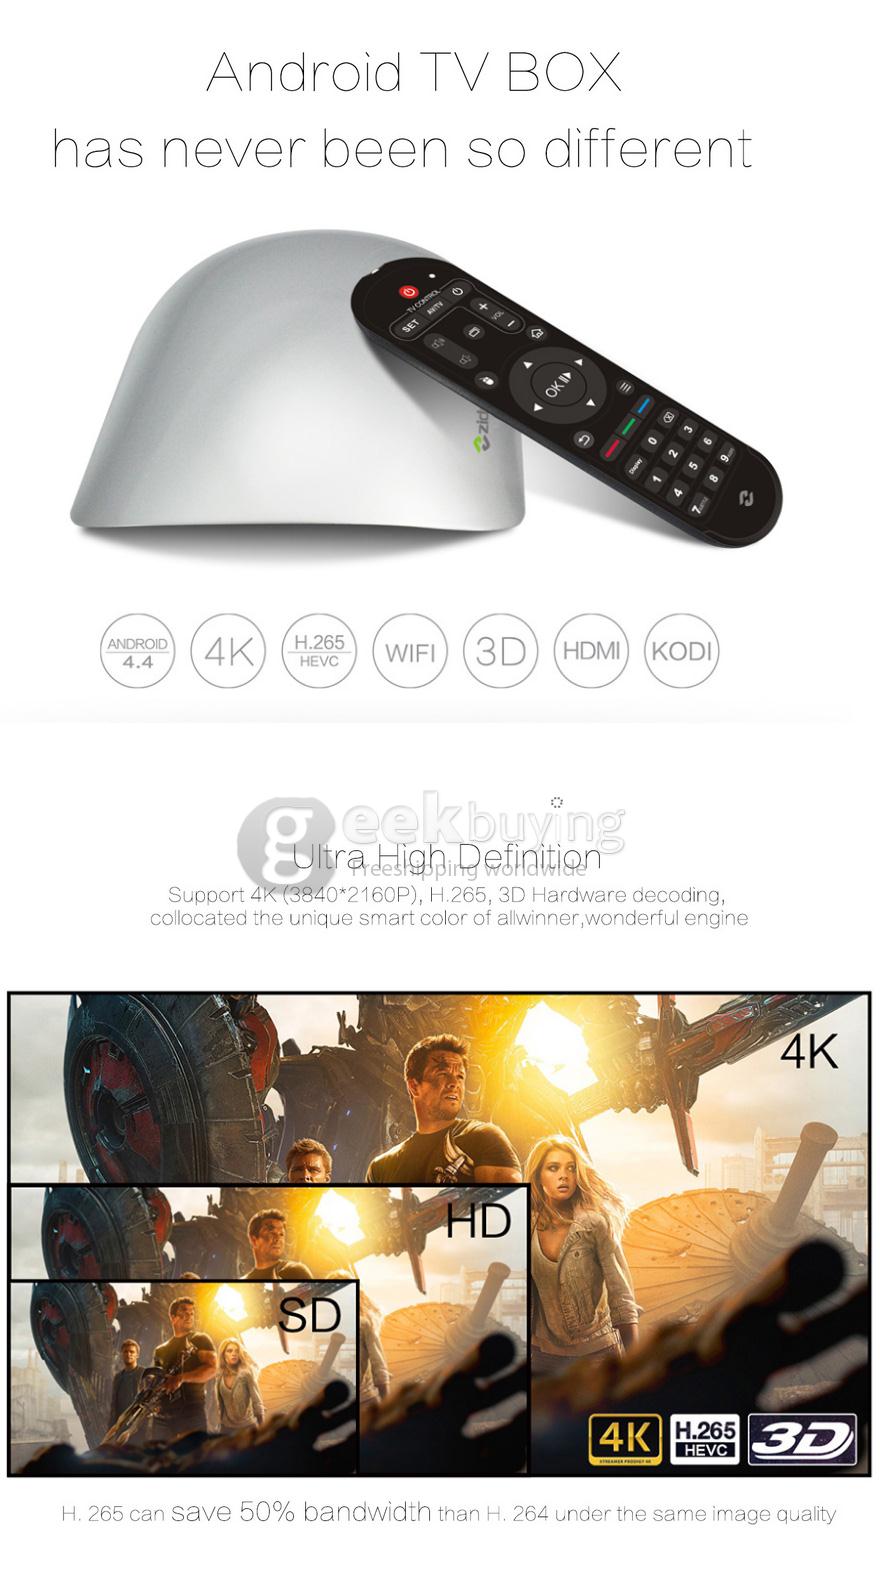 ZIDOO X1 4K TV Box Android 4.4 H.265 3D 1G/8G 802.11 b/g/n LAN HDMI KODI - Silver